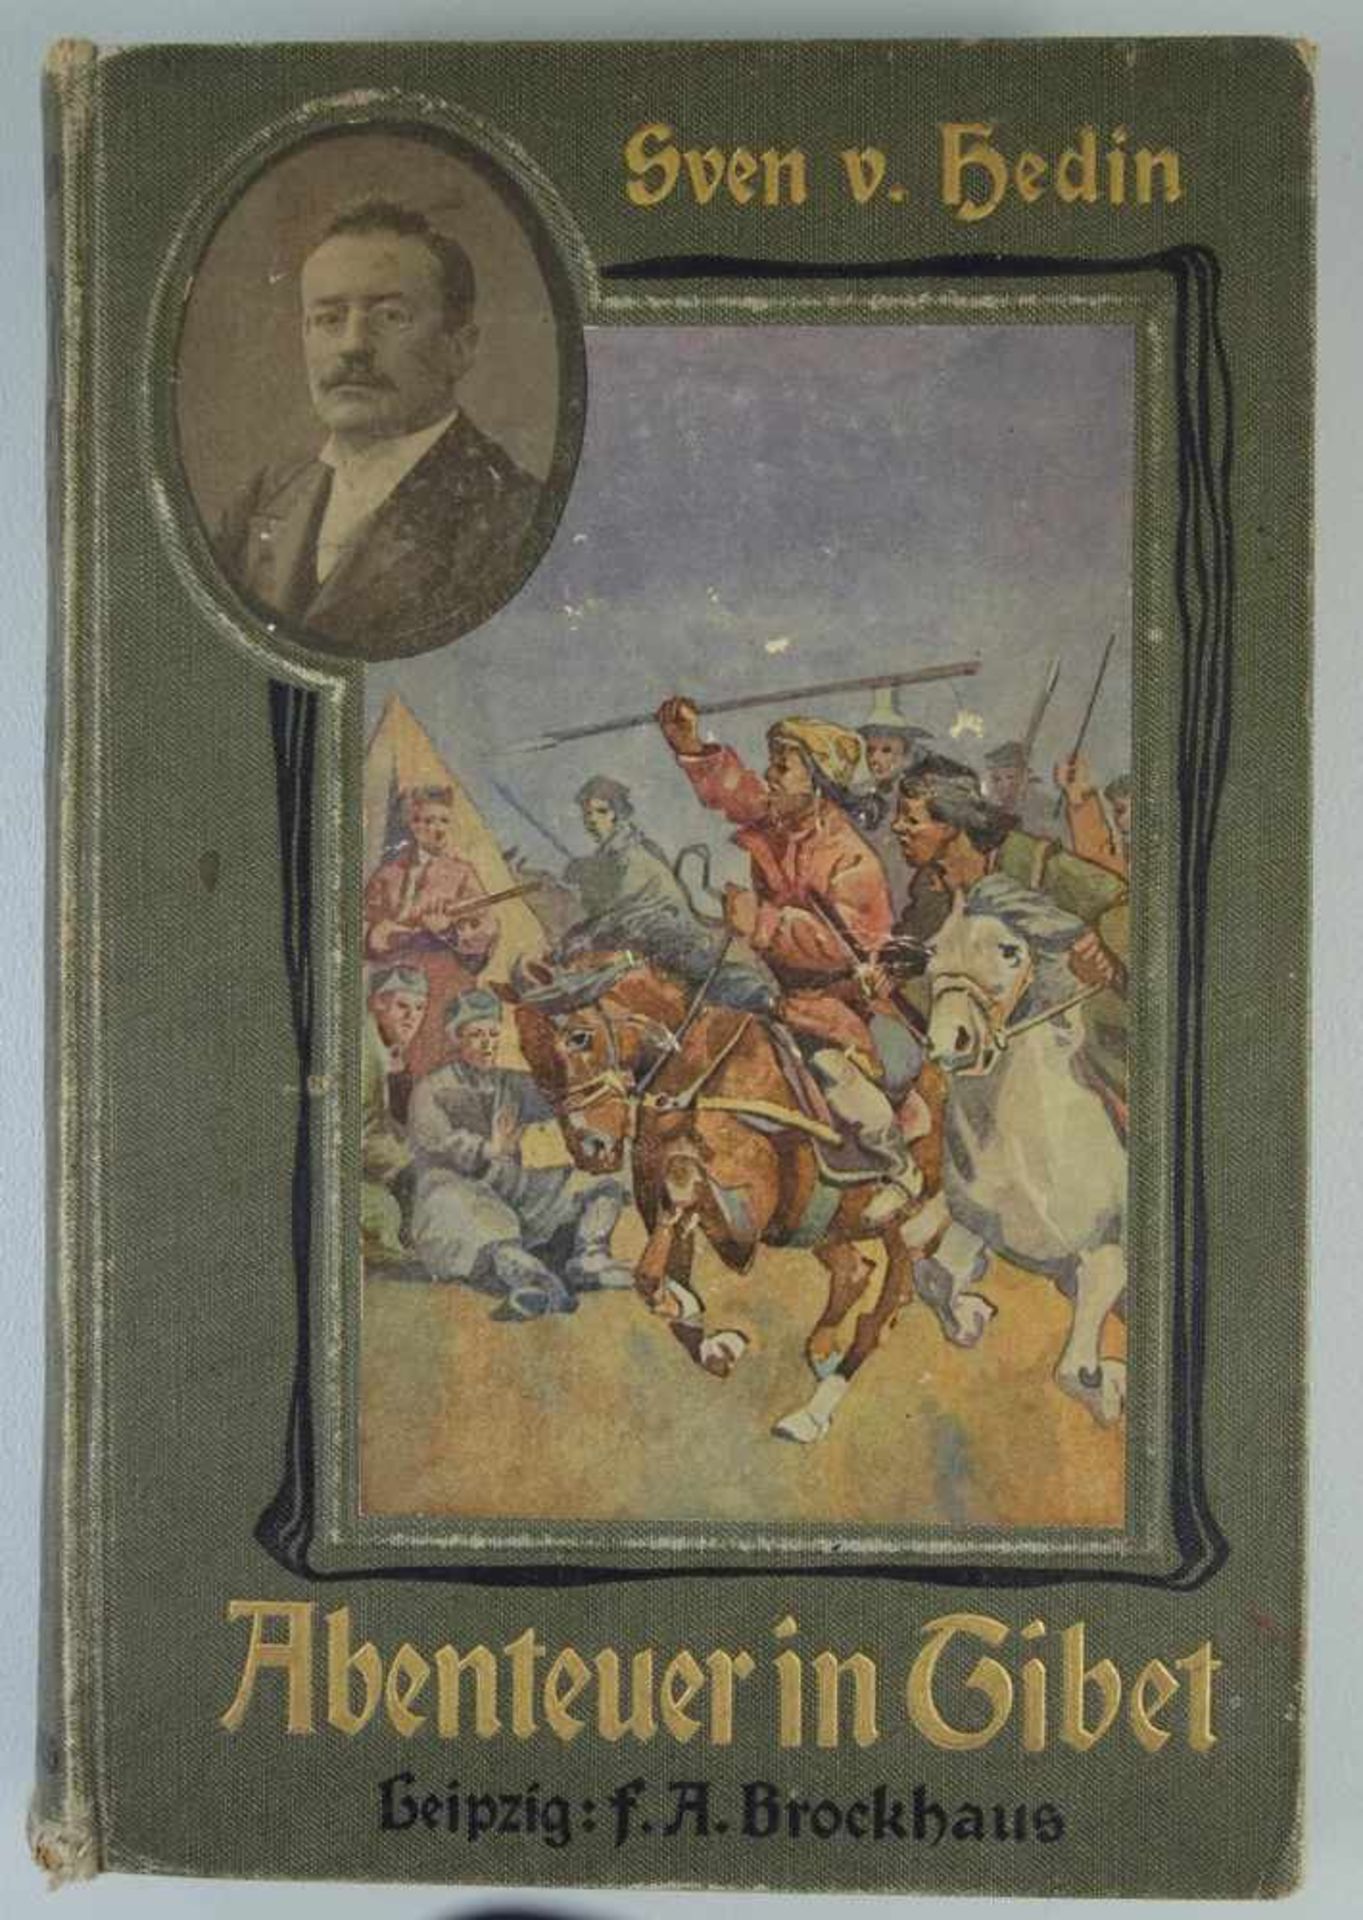 Abenteuer in Tibet, Sven v. Hedin, 1904Verlag F.A.Brockhaus, Leipzig, mit 137 Abb., 8 bunten